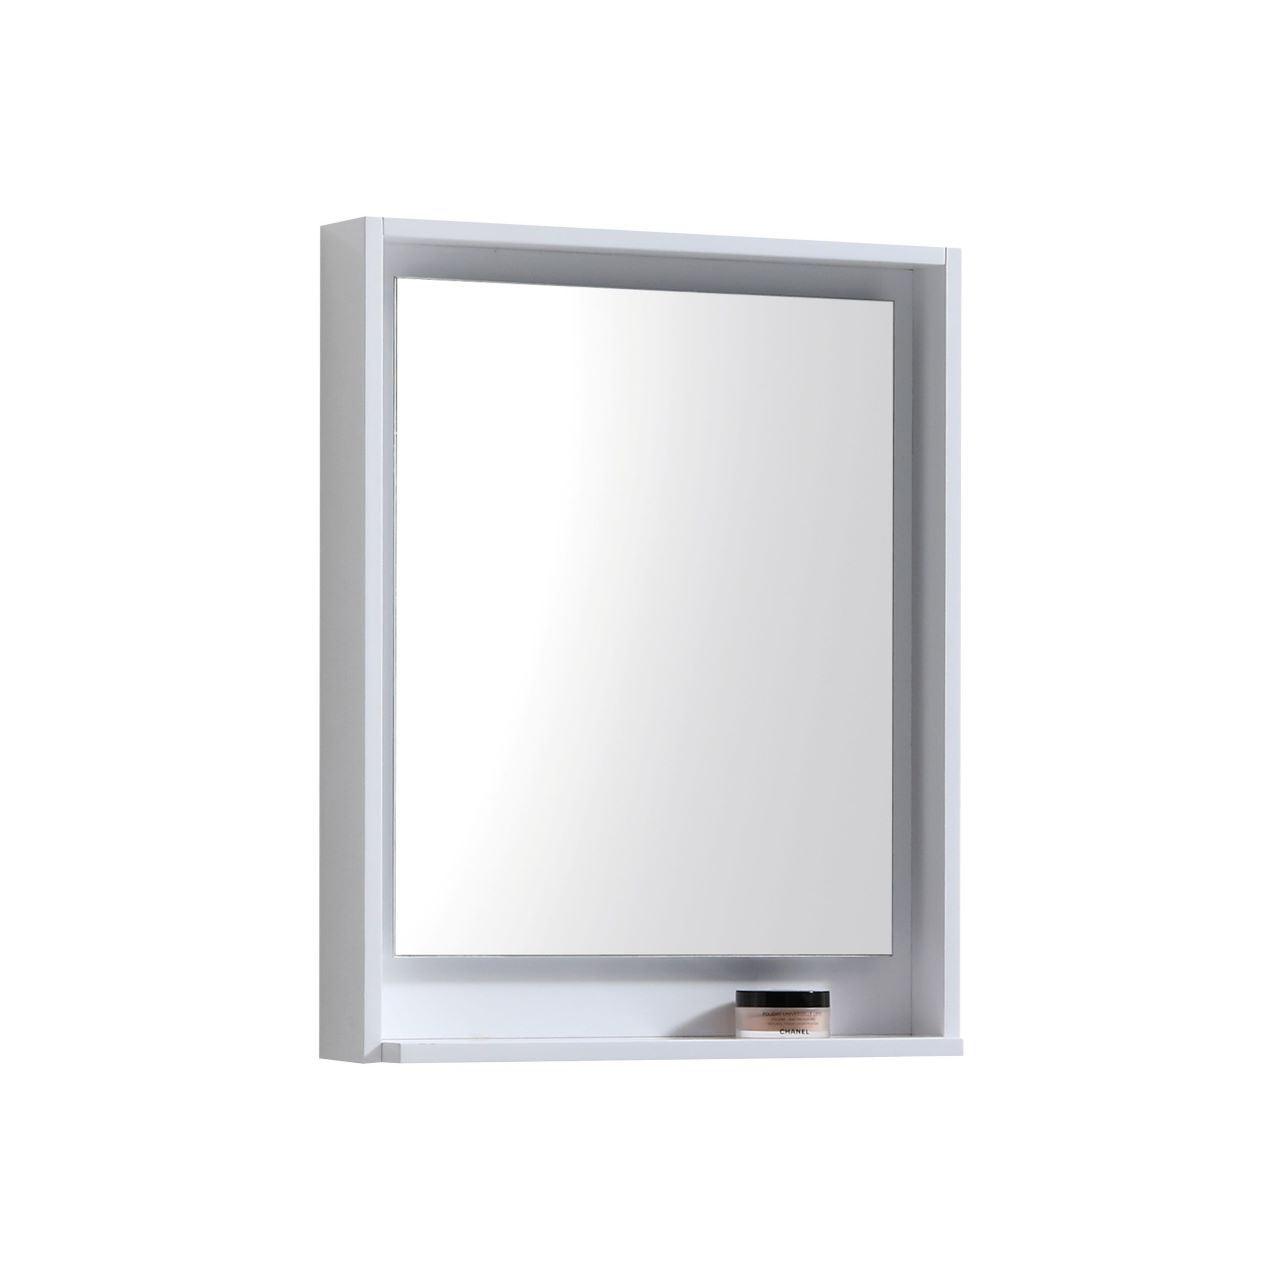 Bosco 24" Framed Mirror With Shelve - Hbdepot